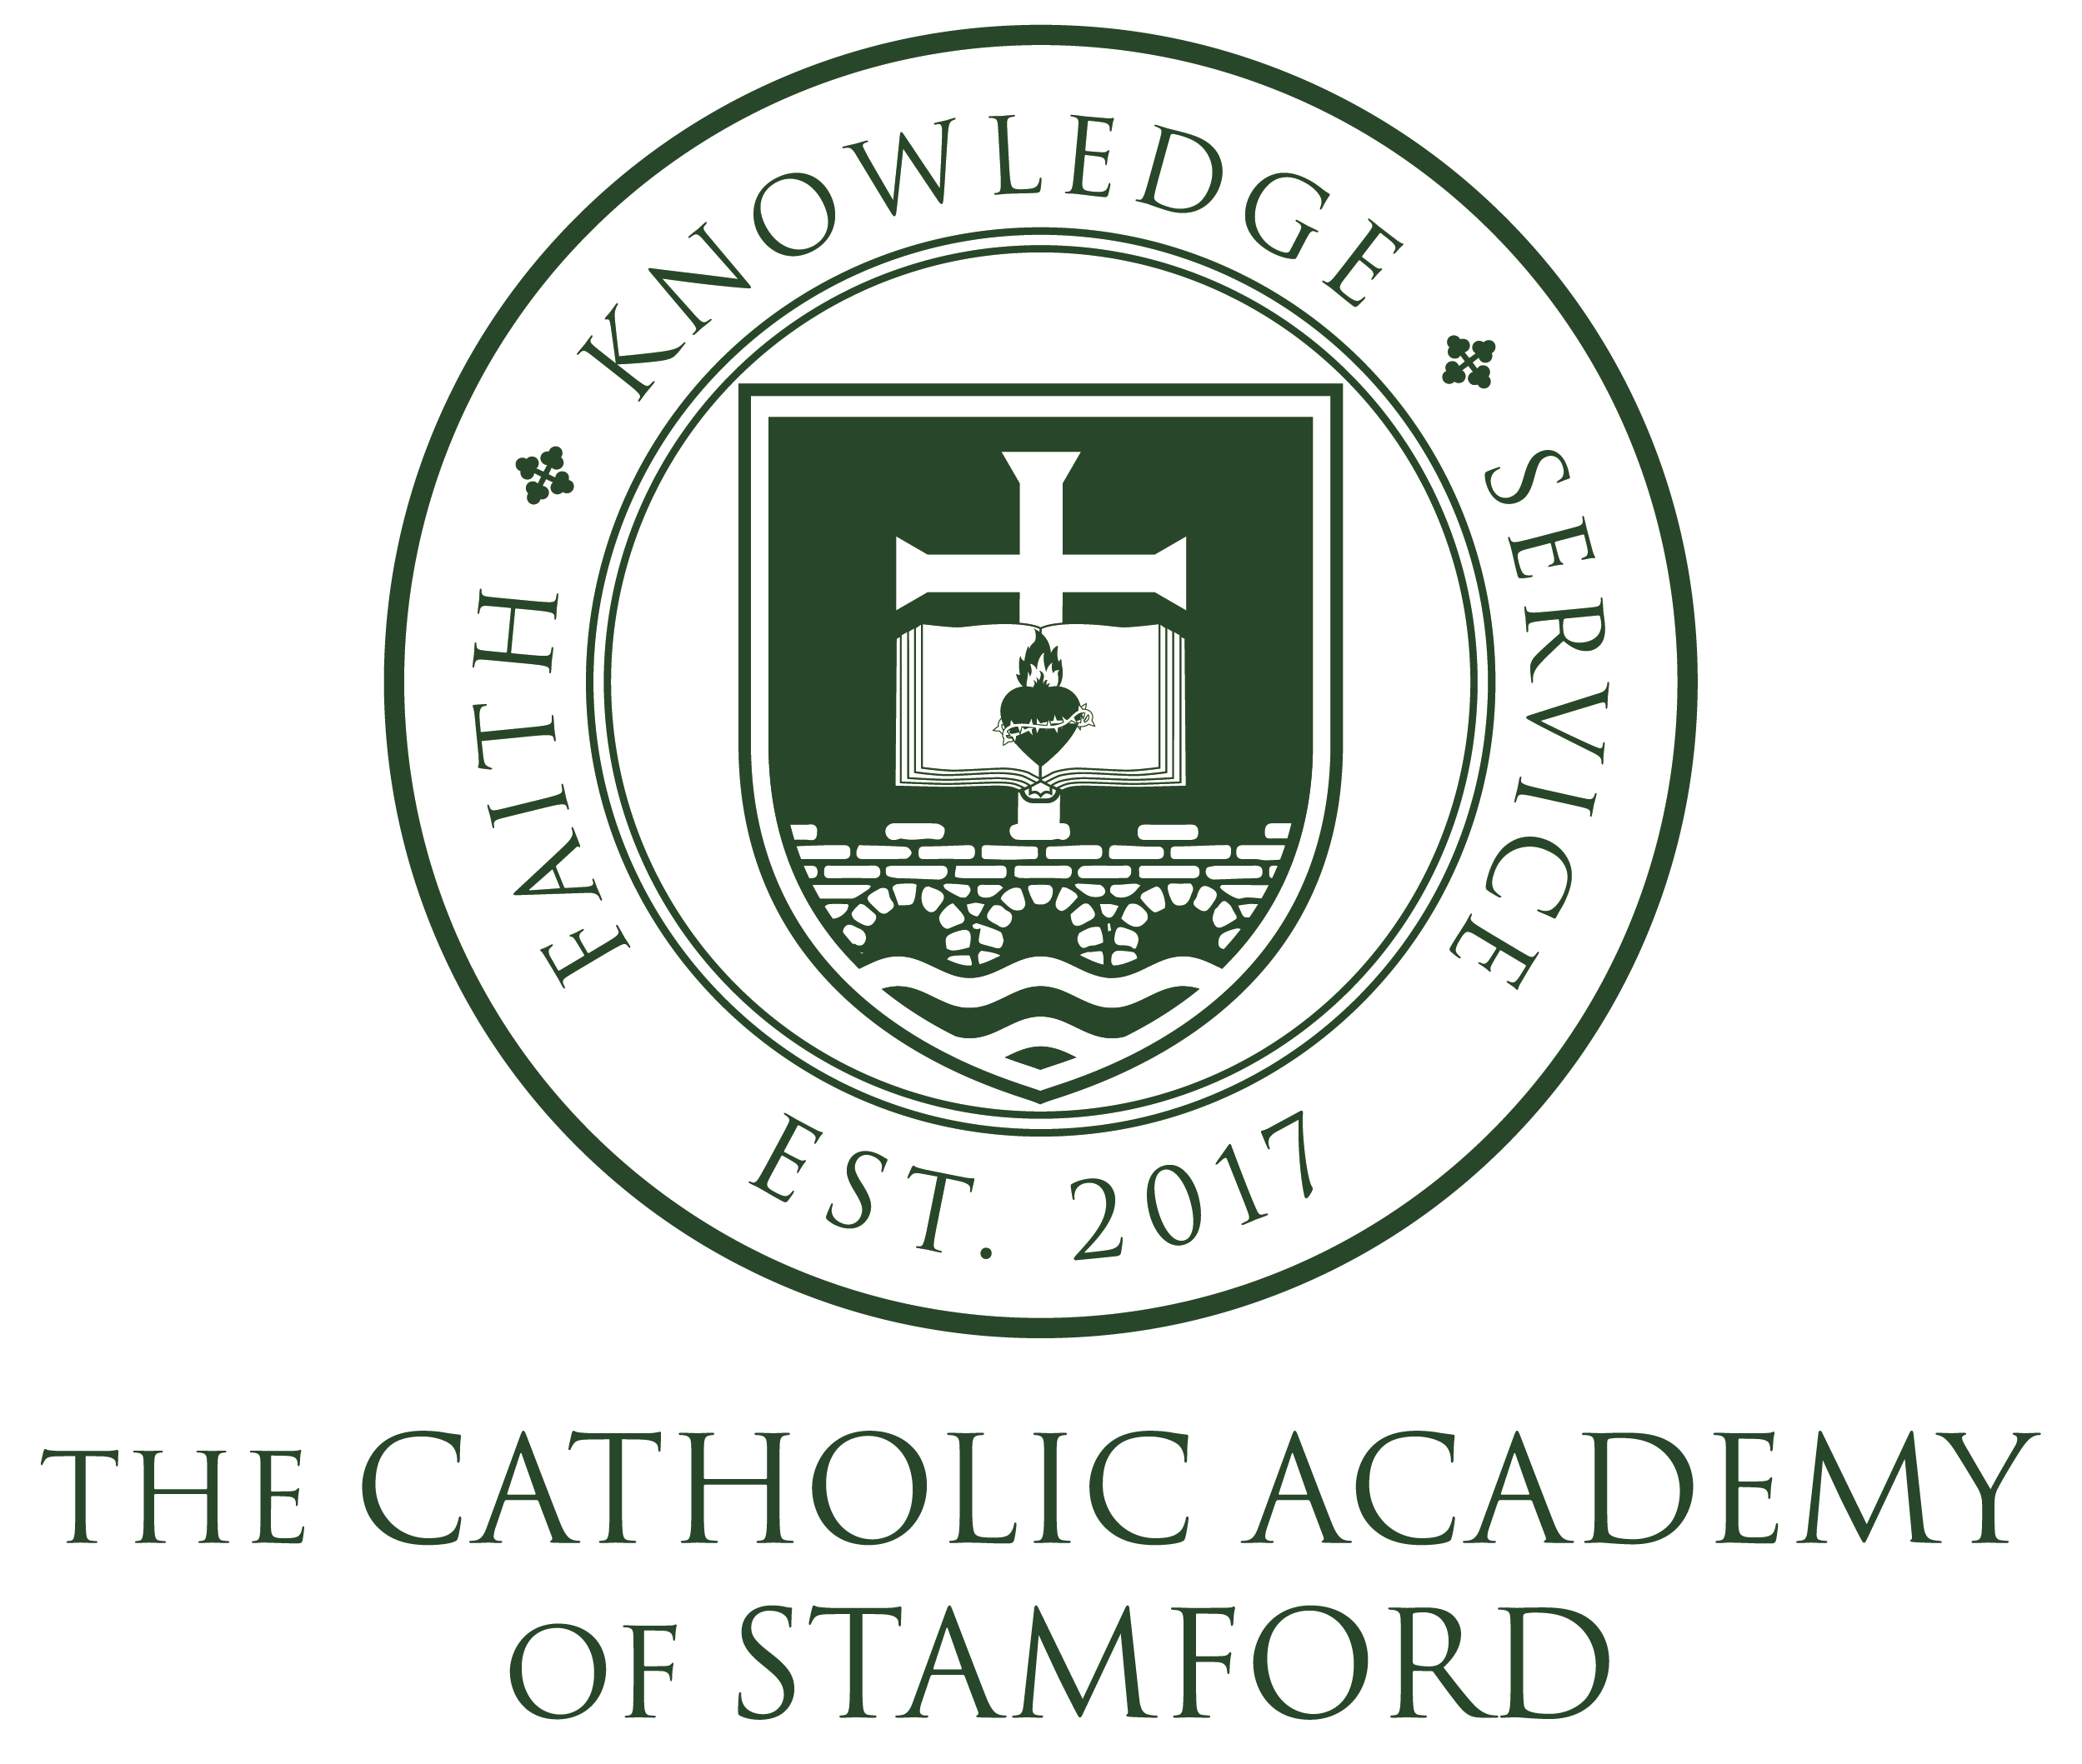 The Catholic Academy of Stamford logo